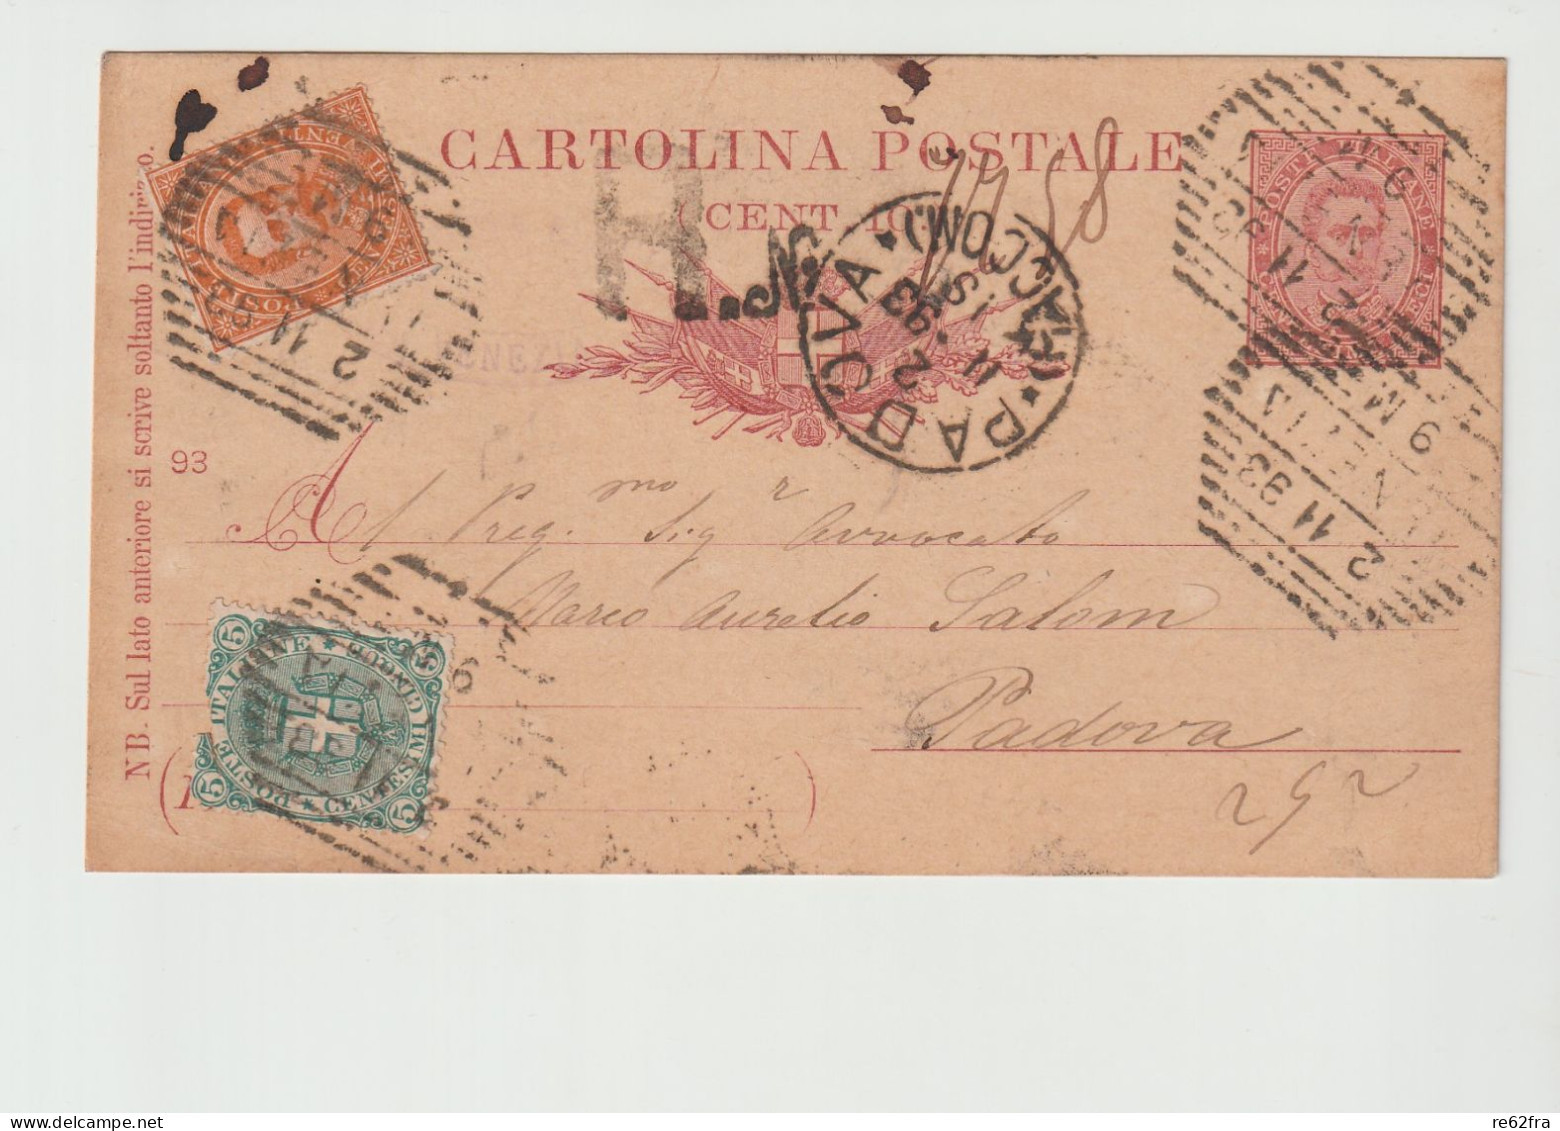 Umberto I° Intero Postale C.10-93, Spedita Nel 1893 Con Raccomandata E Aggiunta Di Francobolli Per C.25 - Entiers Postaux